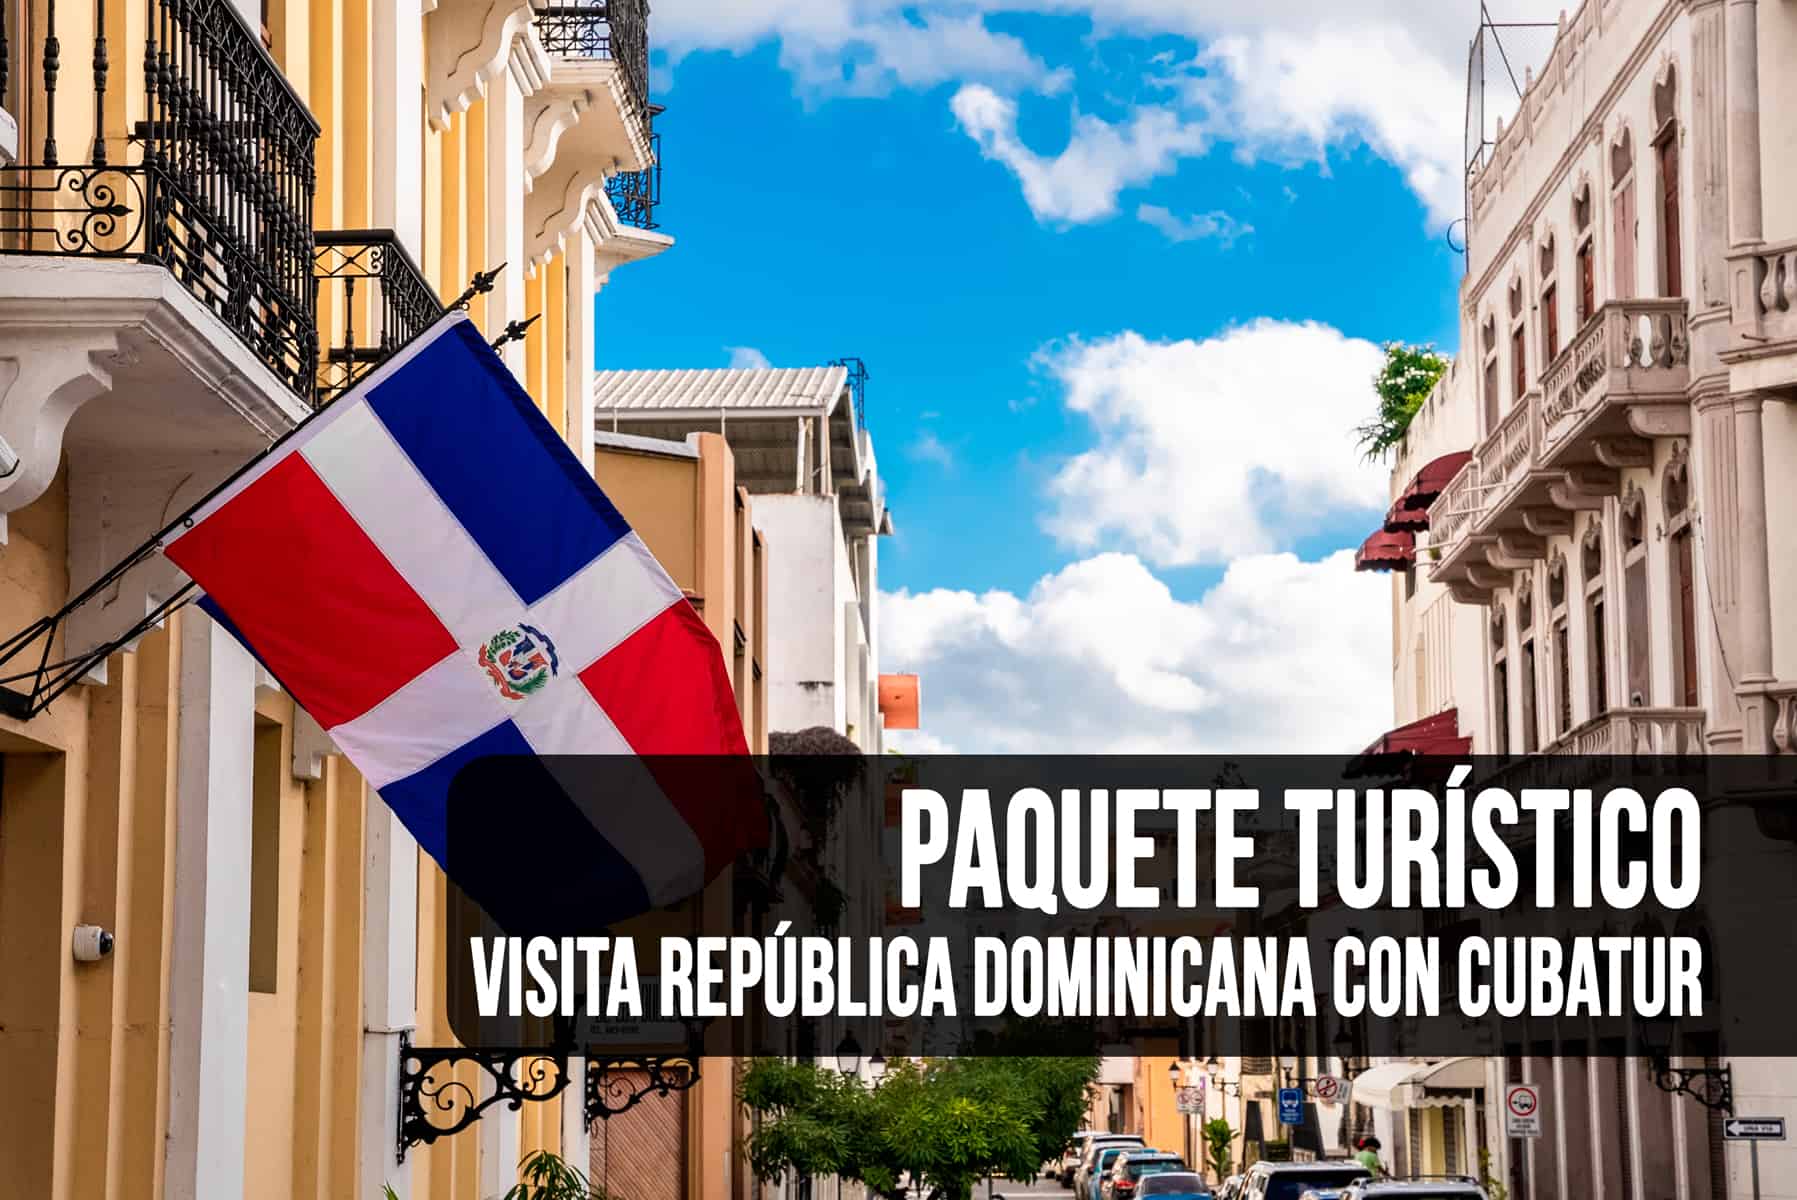 ¡Visita República Dominicana con Este Paquete Turístico de Cubatur!